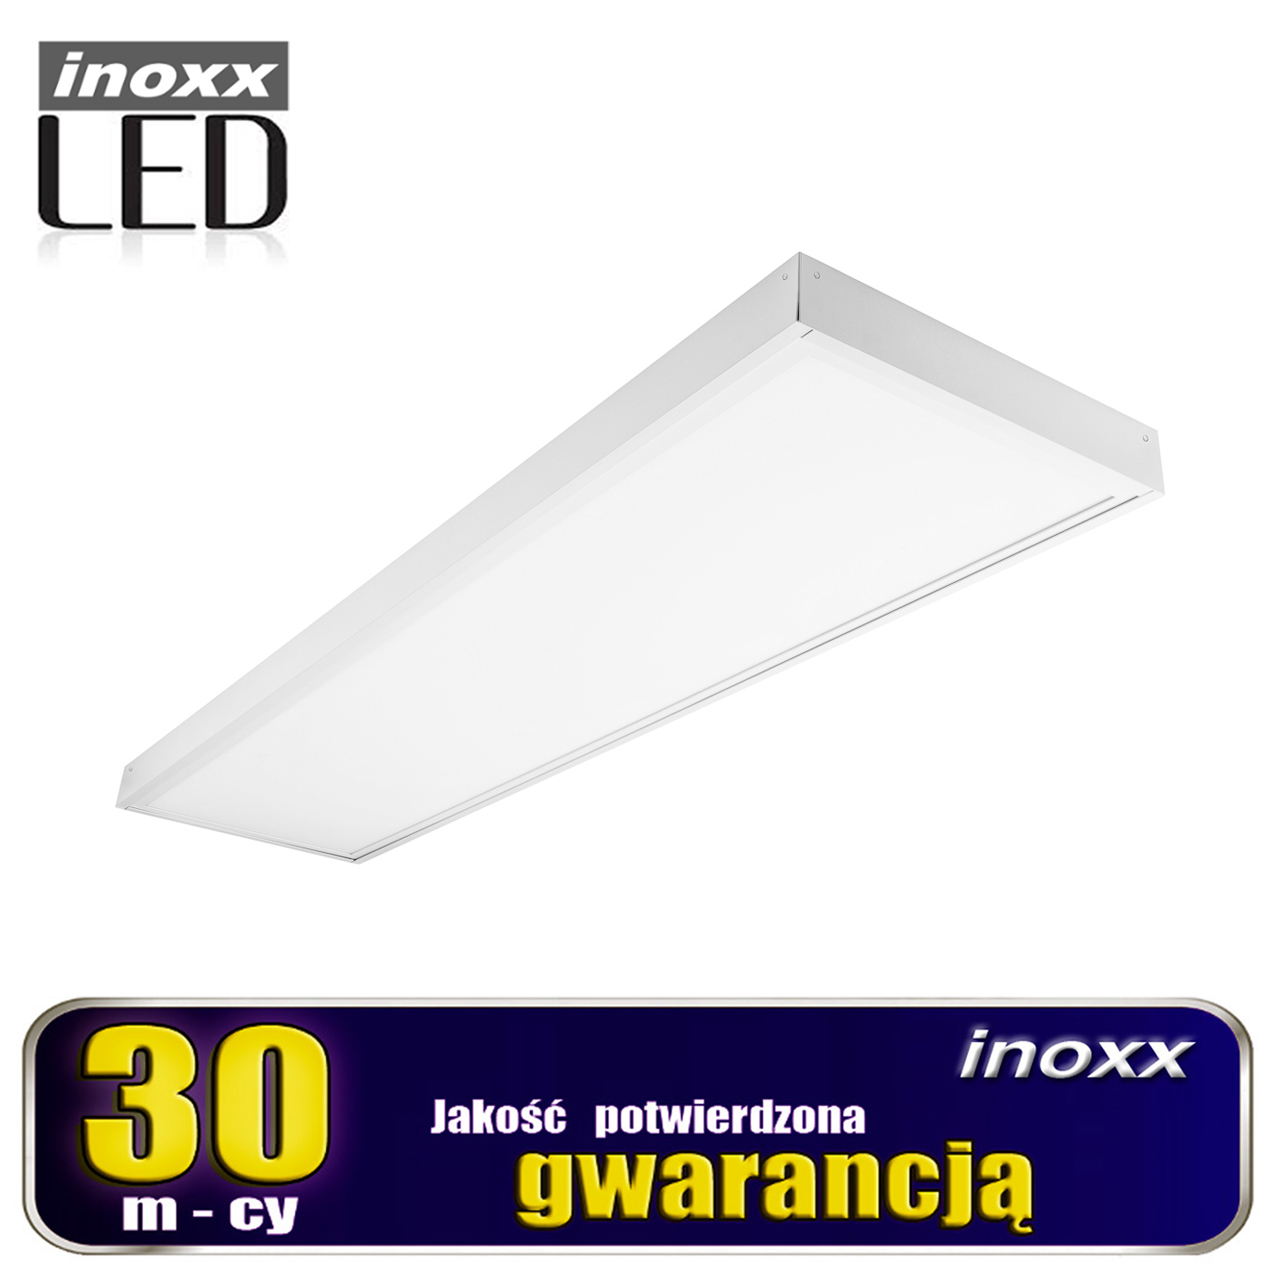 INOXX PAN60W120/30 3000K FS + INOXX PAN-PLF-120/30--panel led:nowoczesny panel led typu slim w cienkiej białej ramcepanel równomiernie rozprasza światło na całej powierzchni lampy (brak ciemnych punktów i widocznych diod) szeroki kąt świecenia lampy, równomiernie oświetla pomieszczenielampa z mlecznym